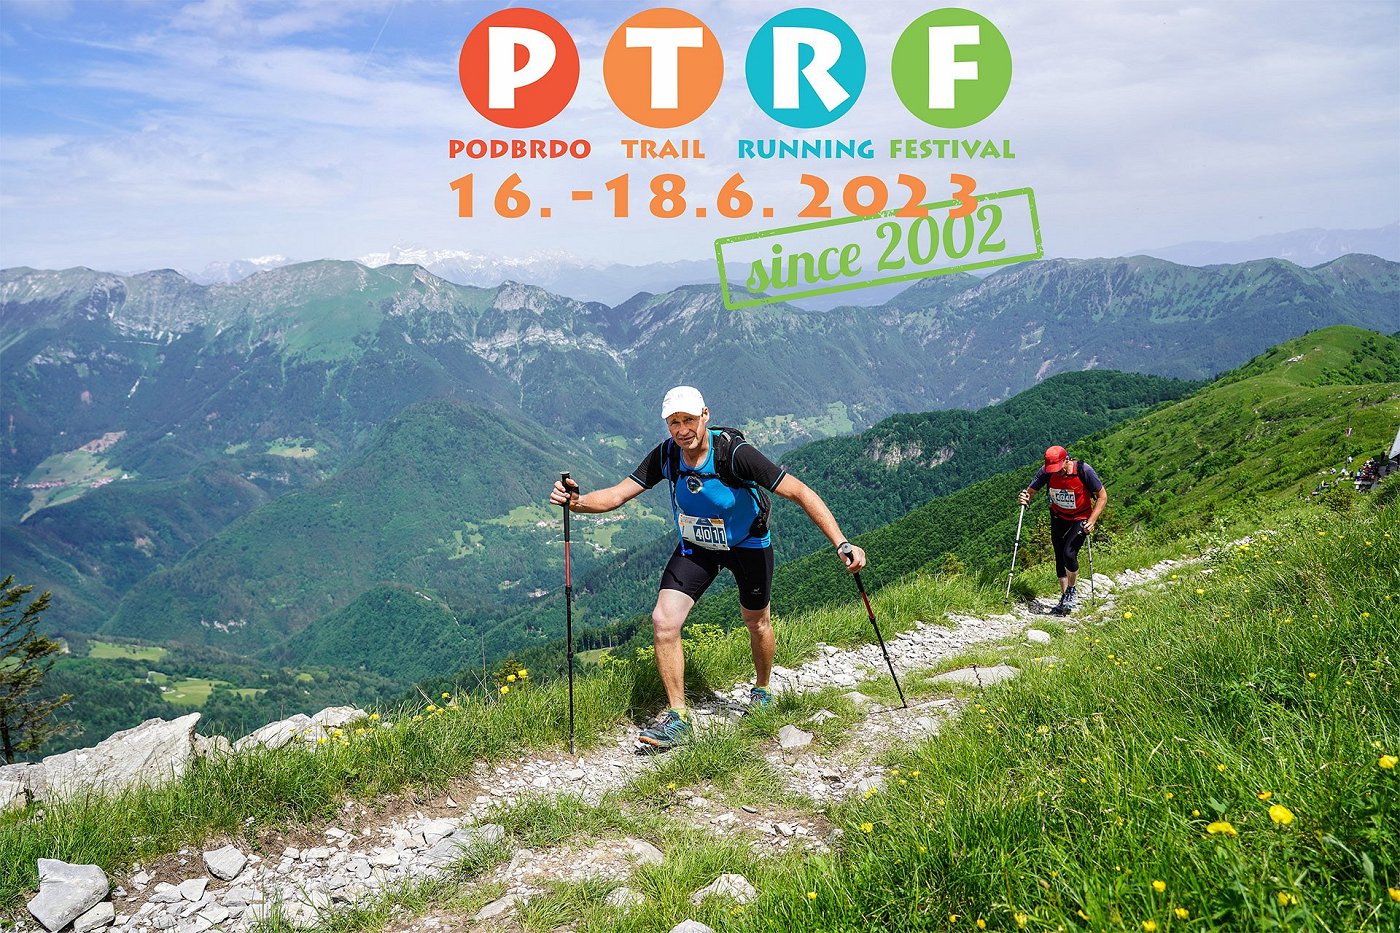 Podbrdo Trail Running Festival 2023